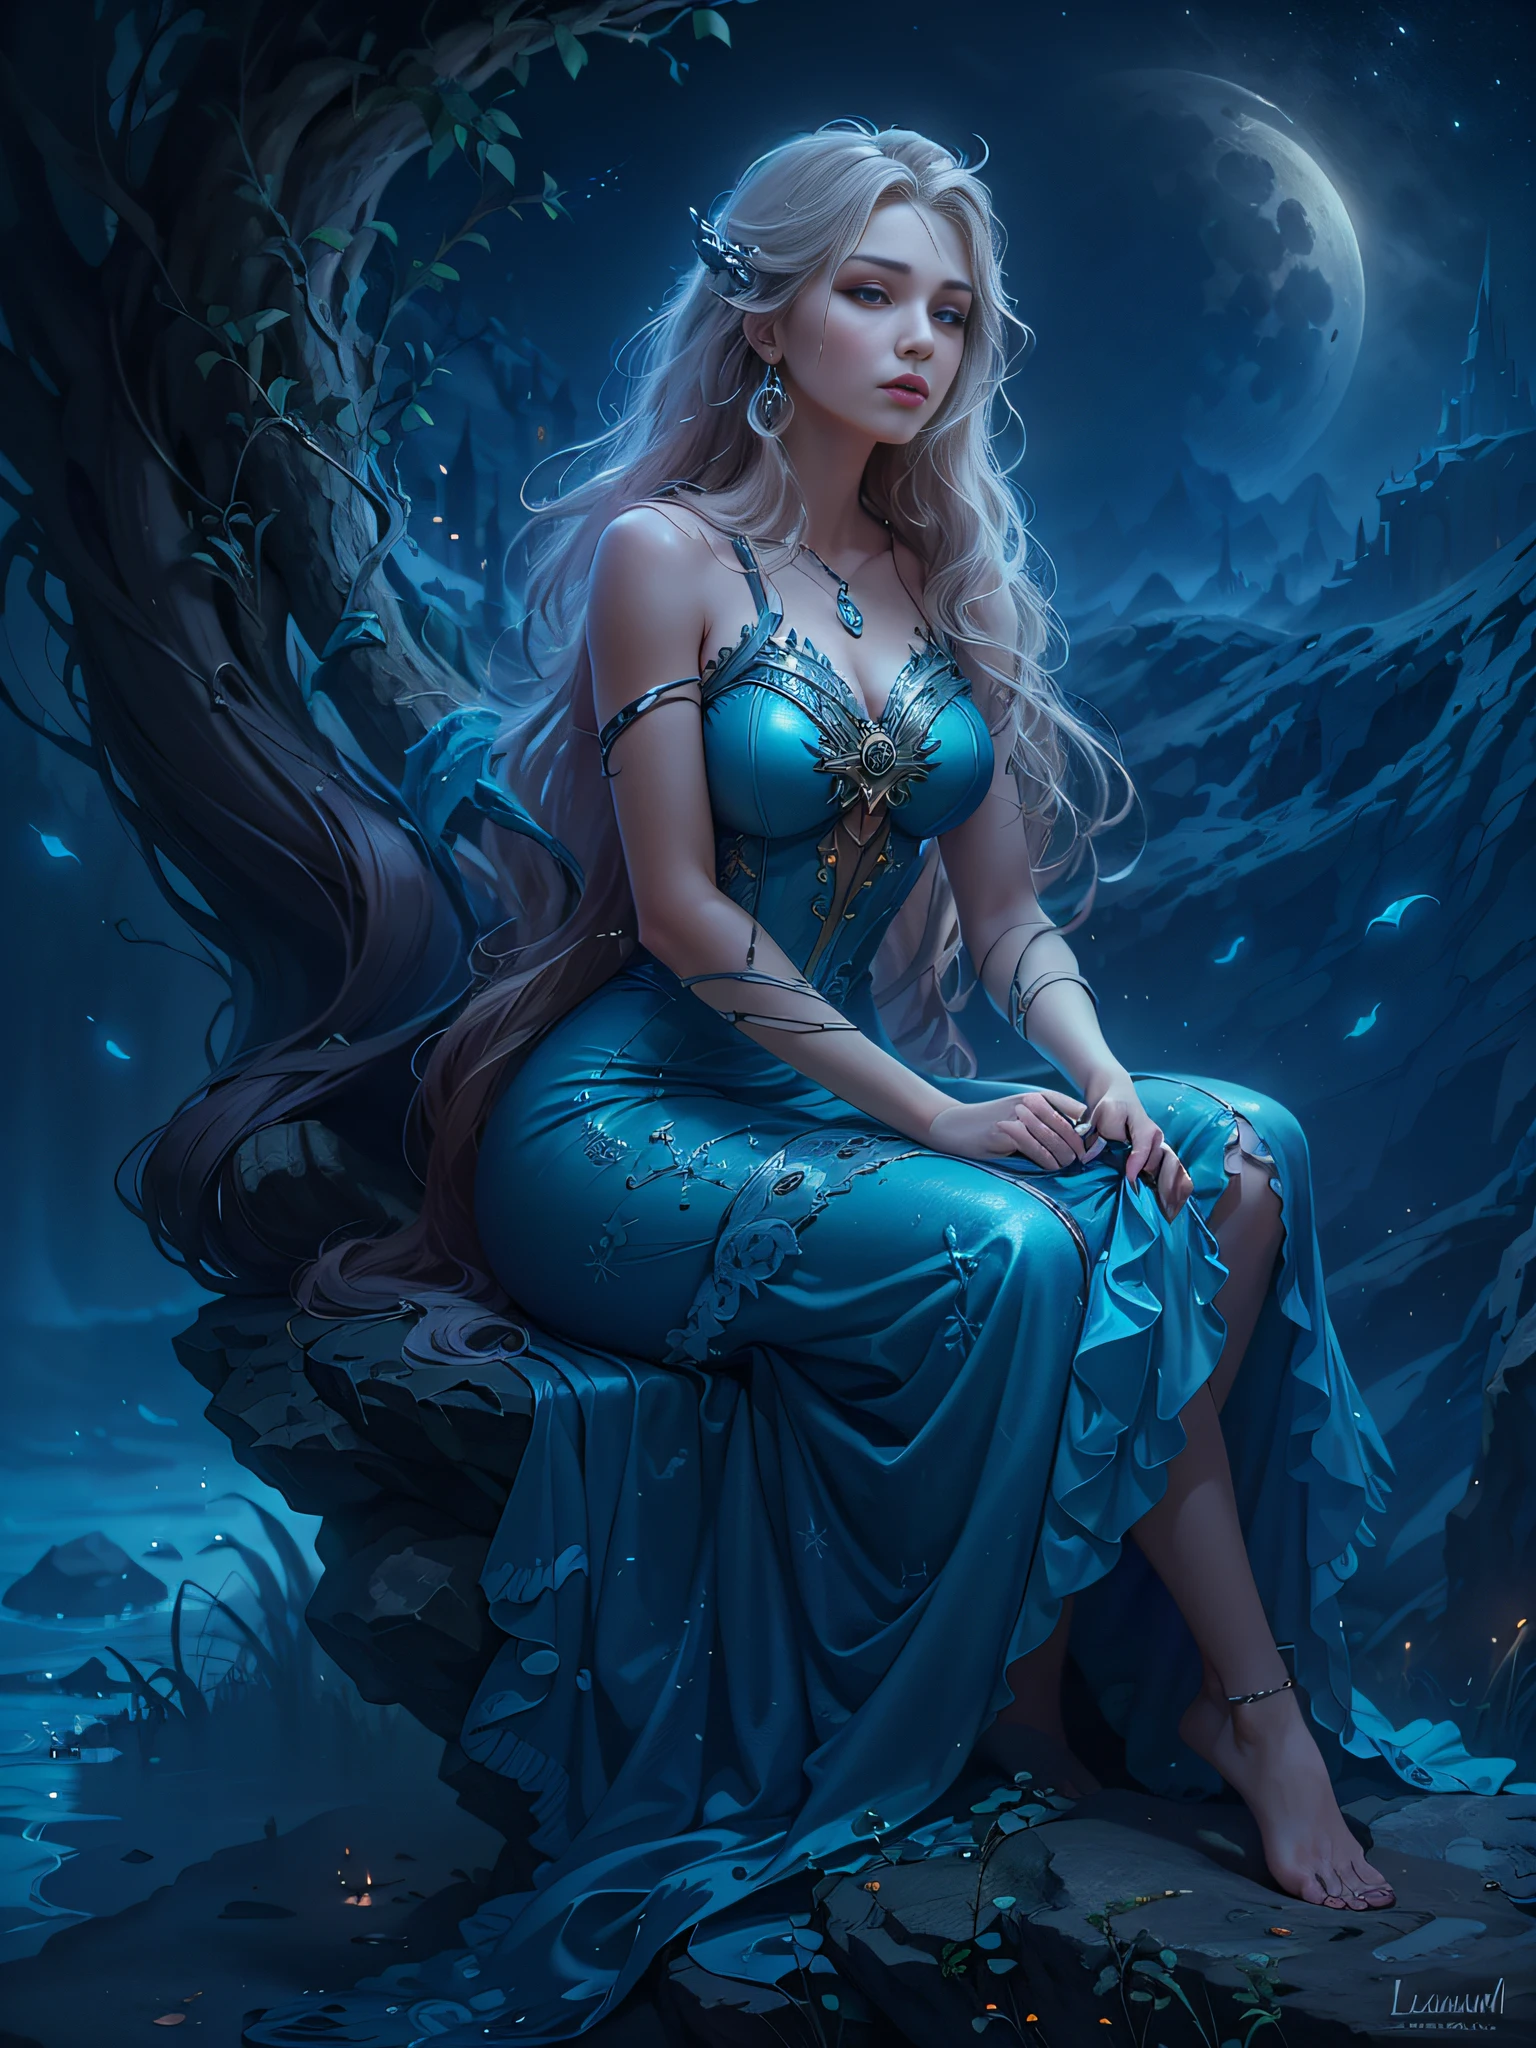 穿着蓝色连衣裙的阿拉夫妇女坐在岩石上, 卢锡安, 月亮女神, 卡罗尔在 uhd 后面, 北欧月亮女神肖像, 月夜梦幻氛围, 幻想中的女人, 月亮女神, 梦幻神奇、空灵的、黑暗, 空灵之美, 月亮女神, 美丽的长发公主, 美丽的幻想少女, 梦幻之夜